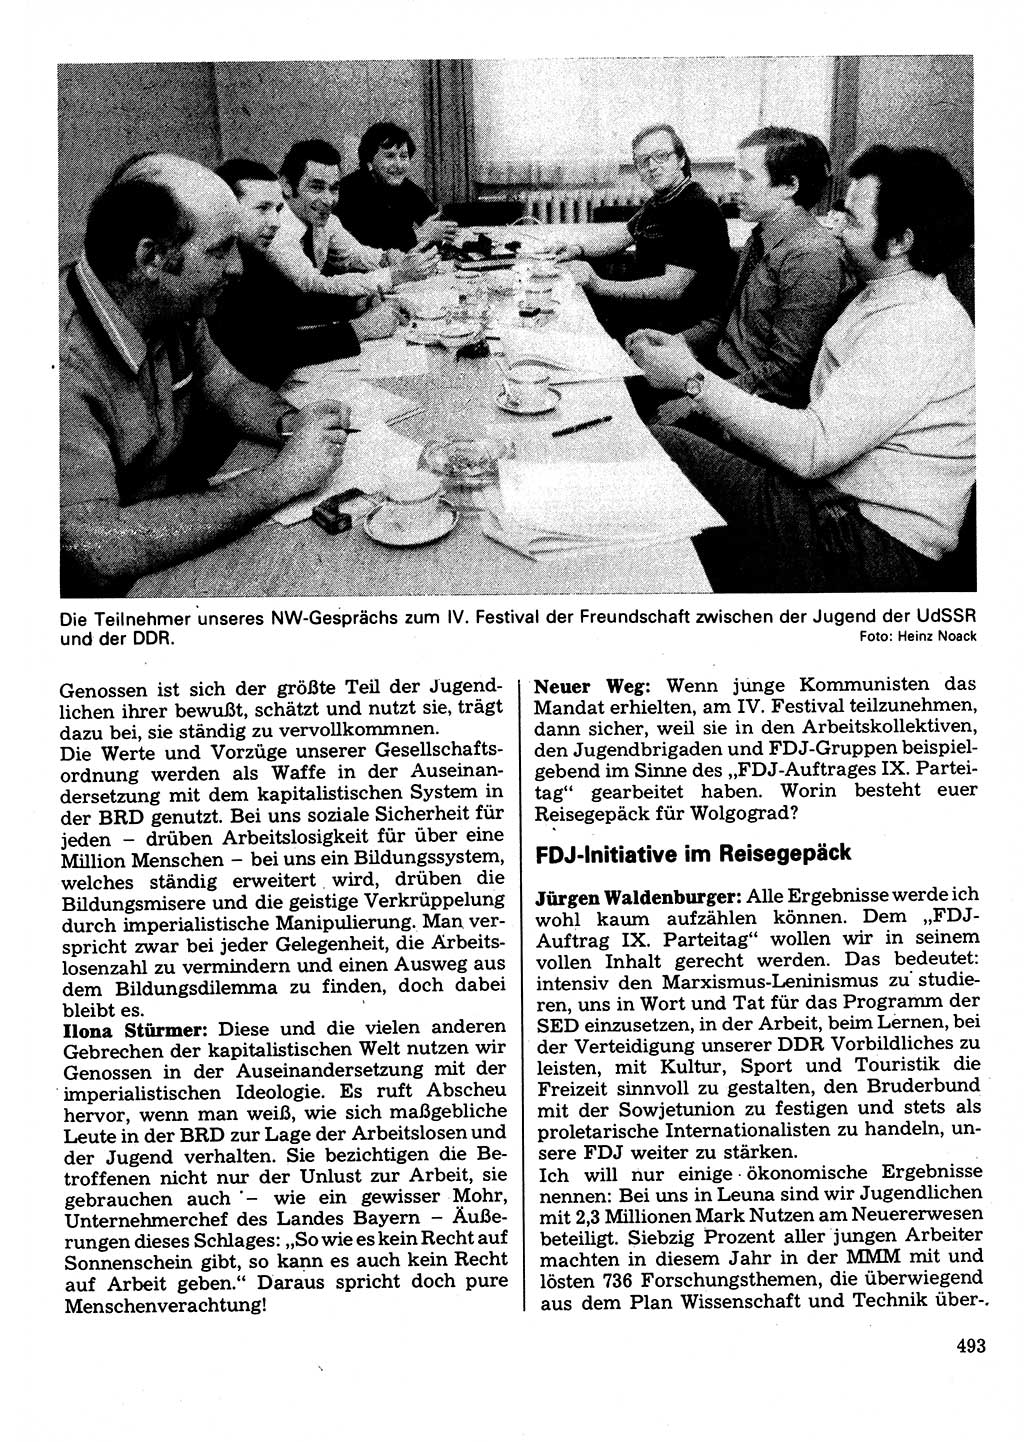 Neuer Weg (NW), Organ des Zentralkomitees (ZK) der SED (Sozialistische Einheitspartei Deutschlands) für Fragen des Parteilebens, 32. Jahrgang [Deutsche Demokratische Republik (DDR)] 1977, Seite 493 (NW ZK SED DDR 1977, S. 493)